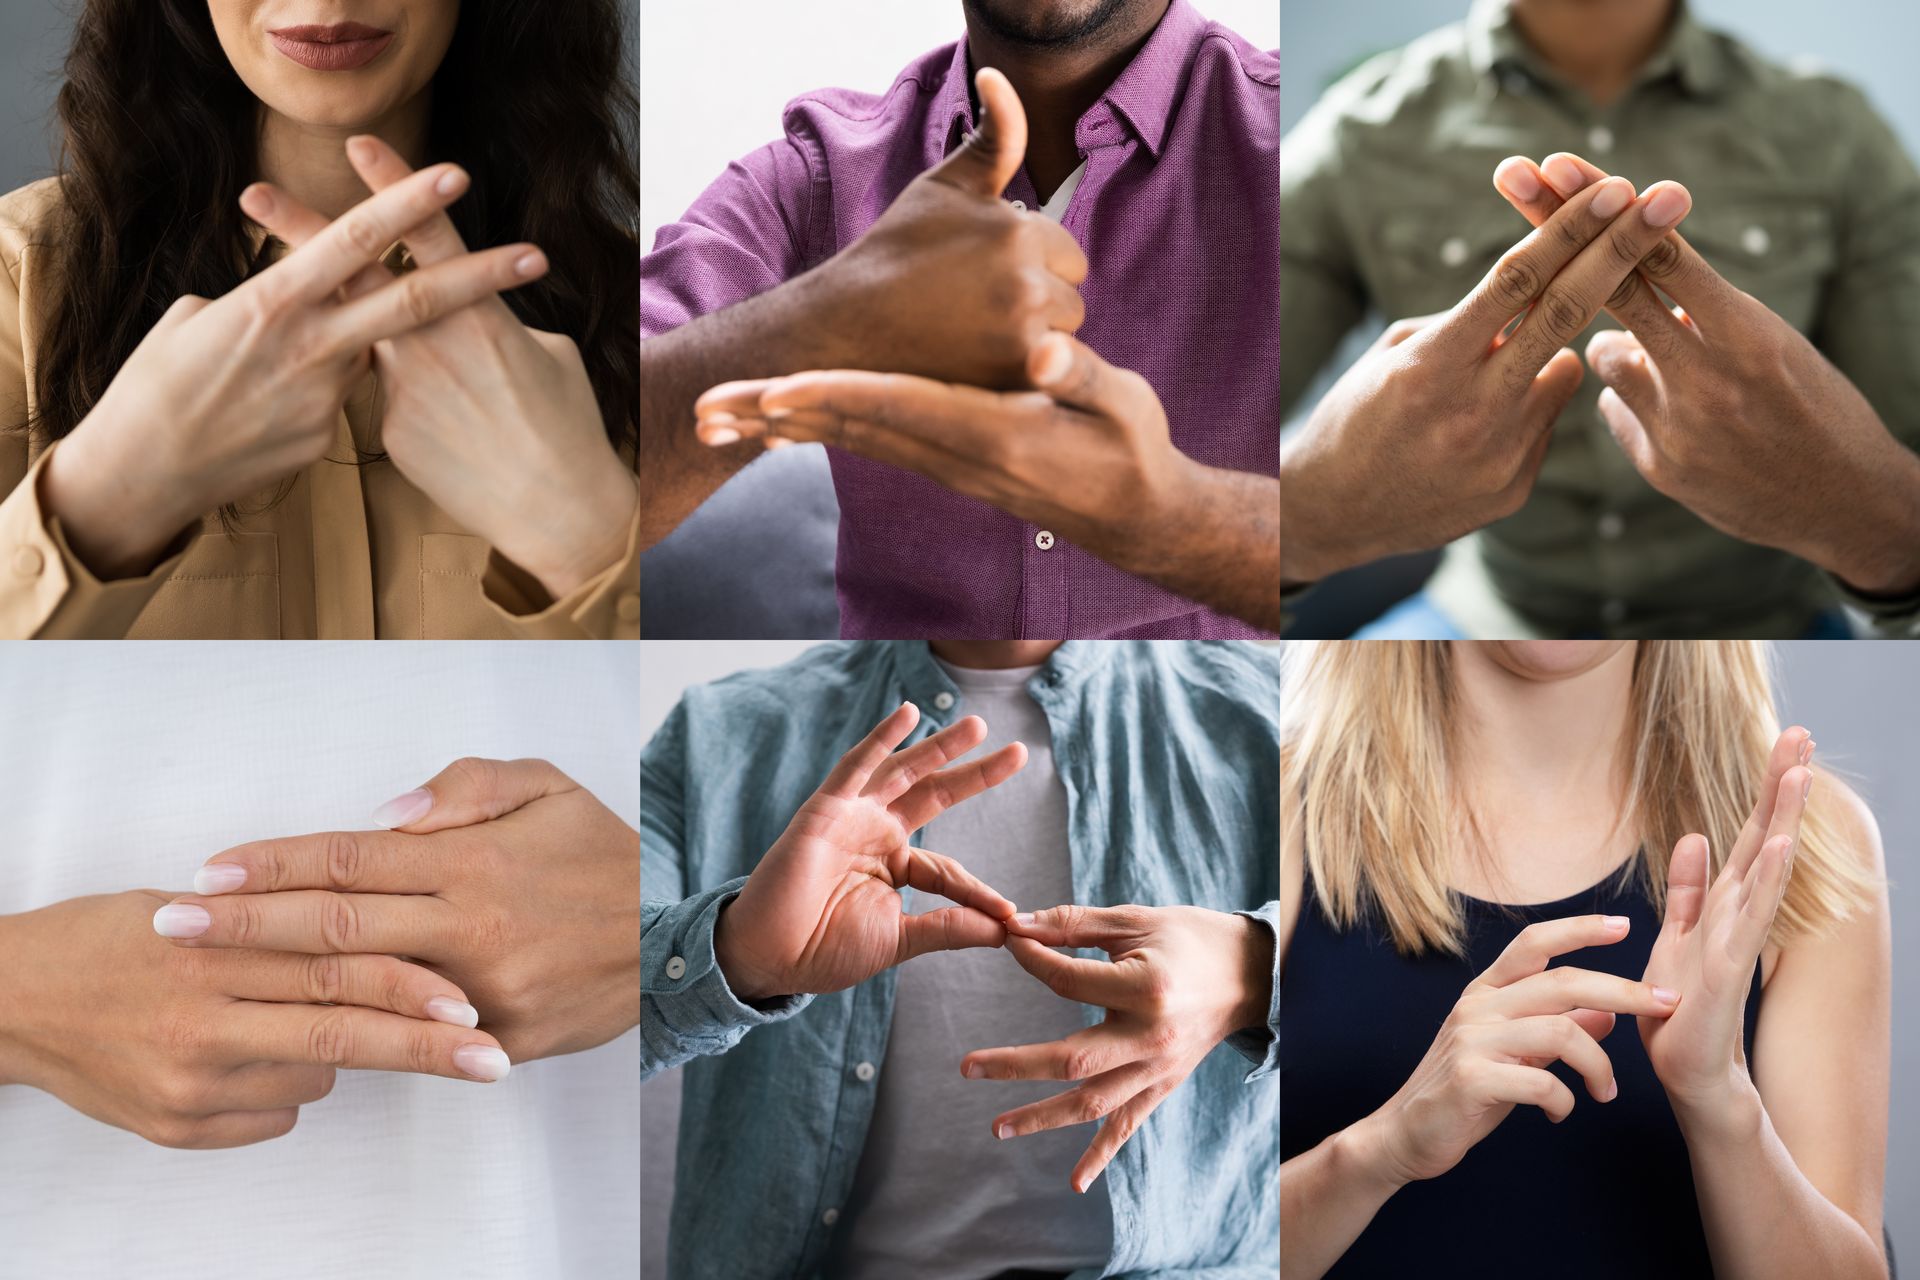 Eine Fotokollage zeigt 6 verschiedene Ausschnitte der Hände von Personen, die gebärden.